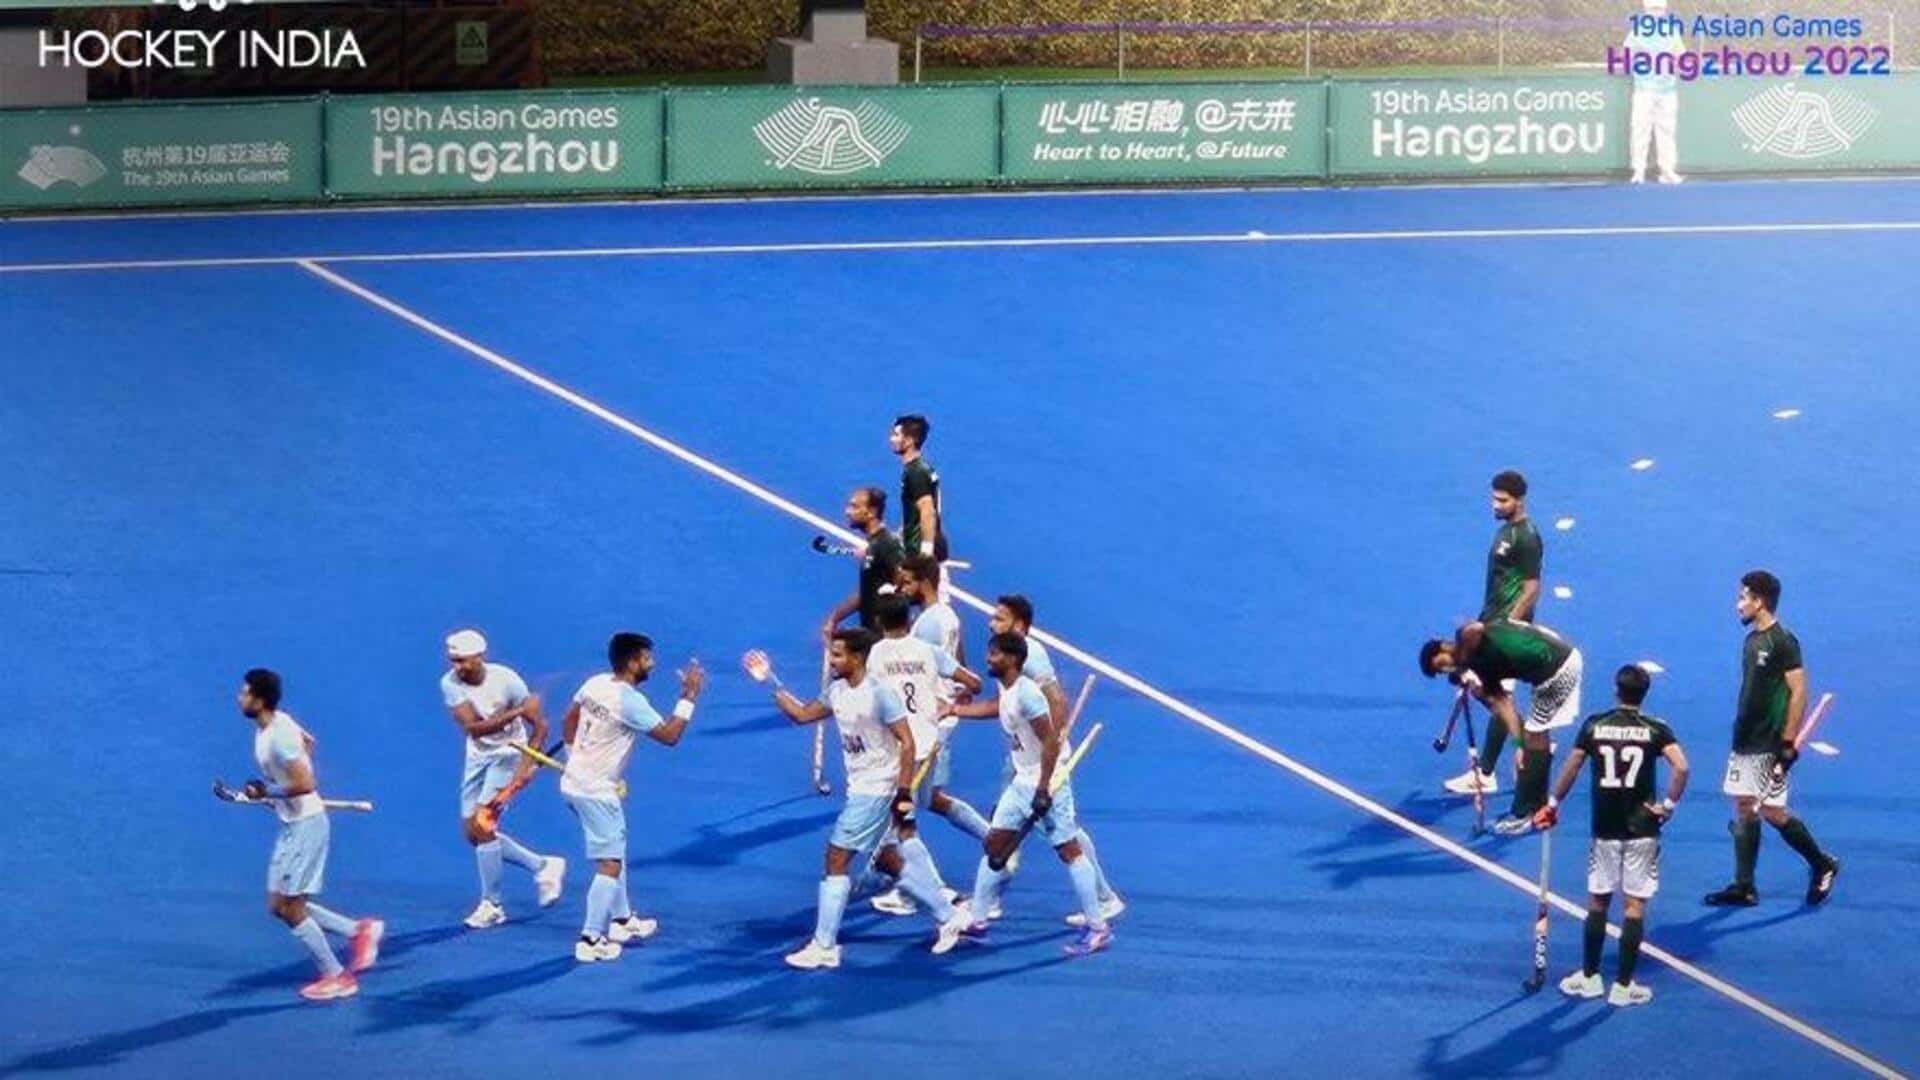 एशियाई खेल, हॉकी: भारत ने पाकिस्तान को रिकॉर्ड अंतर से हराया, सेमीफाइनल में बनाई जगह